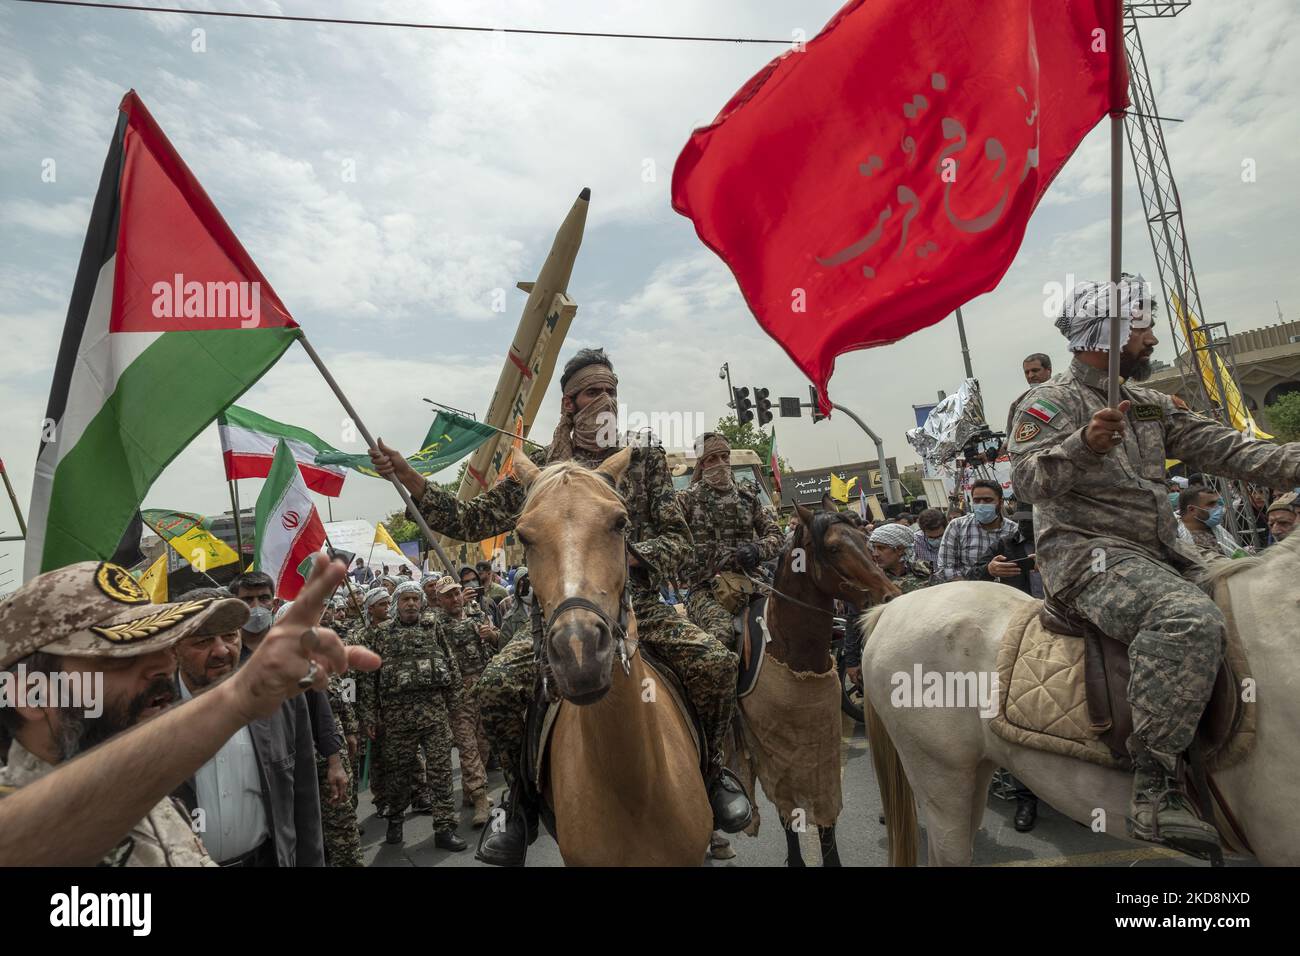 Ein Militärpersonal der Islamischen Revolutionsgarde (IRGC), das eine palästinensische Flagge trägt, während er auf einem Pferd unter einer iranischen Kheibar-Shekan-Ballistikrakete in der Innenstadt von Teheran während einer Kundgebung zum Gedenken an den Internationalen Quds-Tag, der auch als Jerusalemtag bekannt ist, am 29. April 2022 ritt. (Foto von Morteza Nikoubazl/NurPhoto) Stockfoto